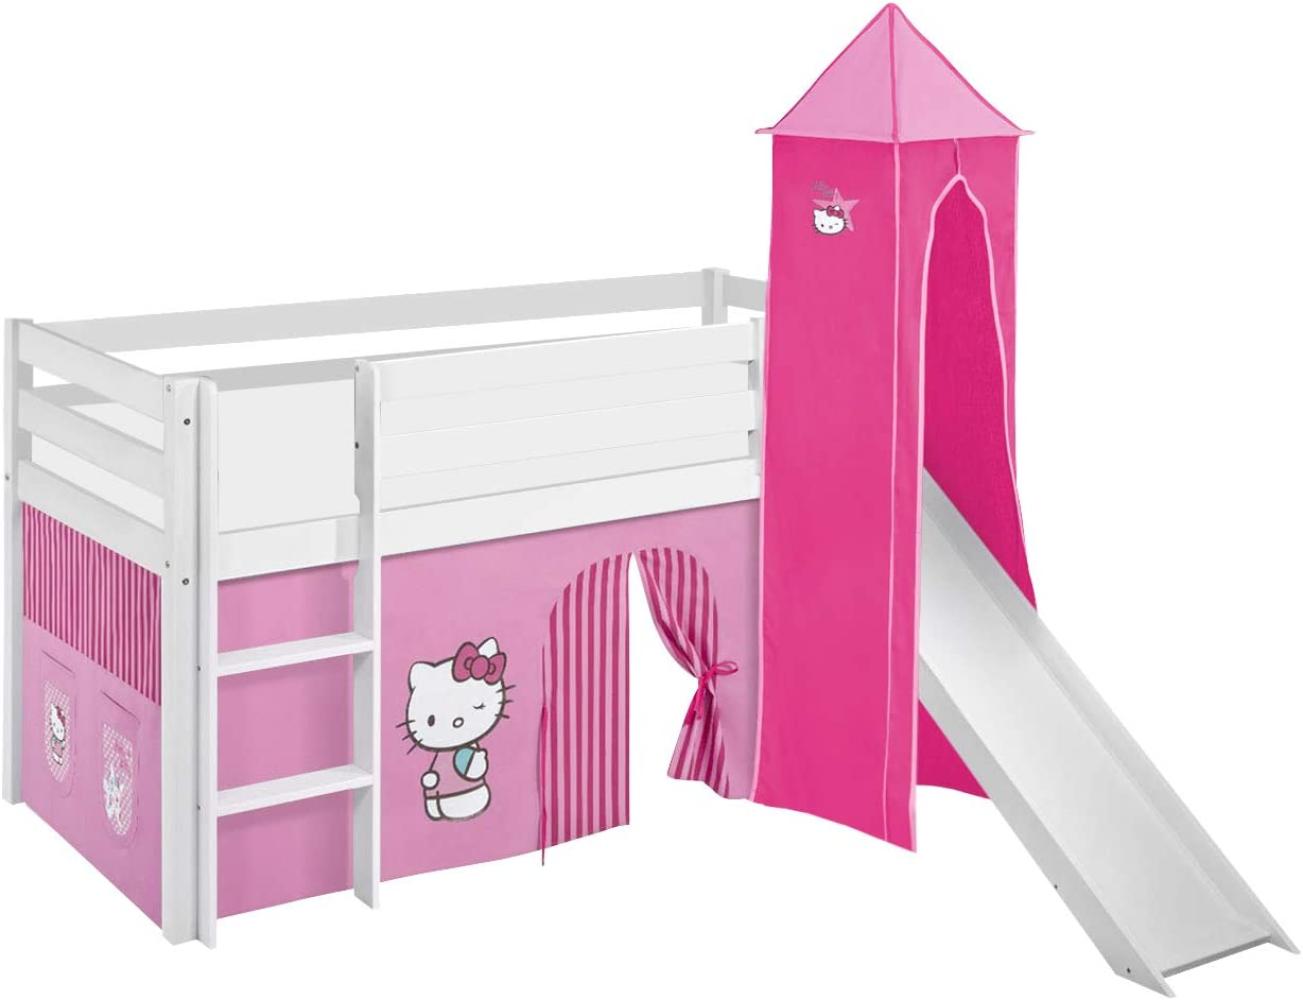 Lilokids 'Jelle' Spielbett 90 x 200 cm, Hello Kitty Rosa, Kiefer massiv, mit Turm, Rutsche und Vorhang Bild 1